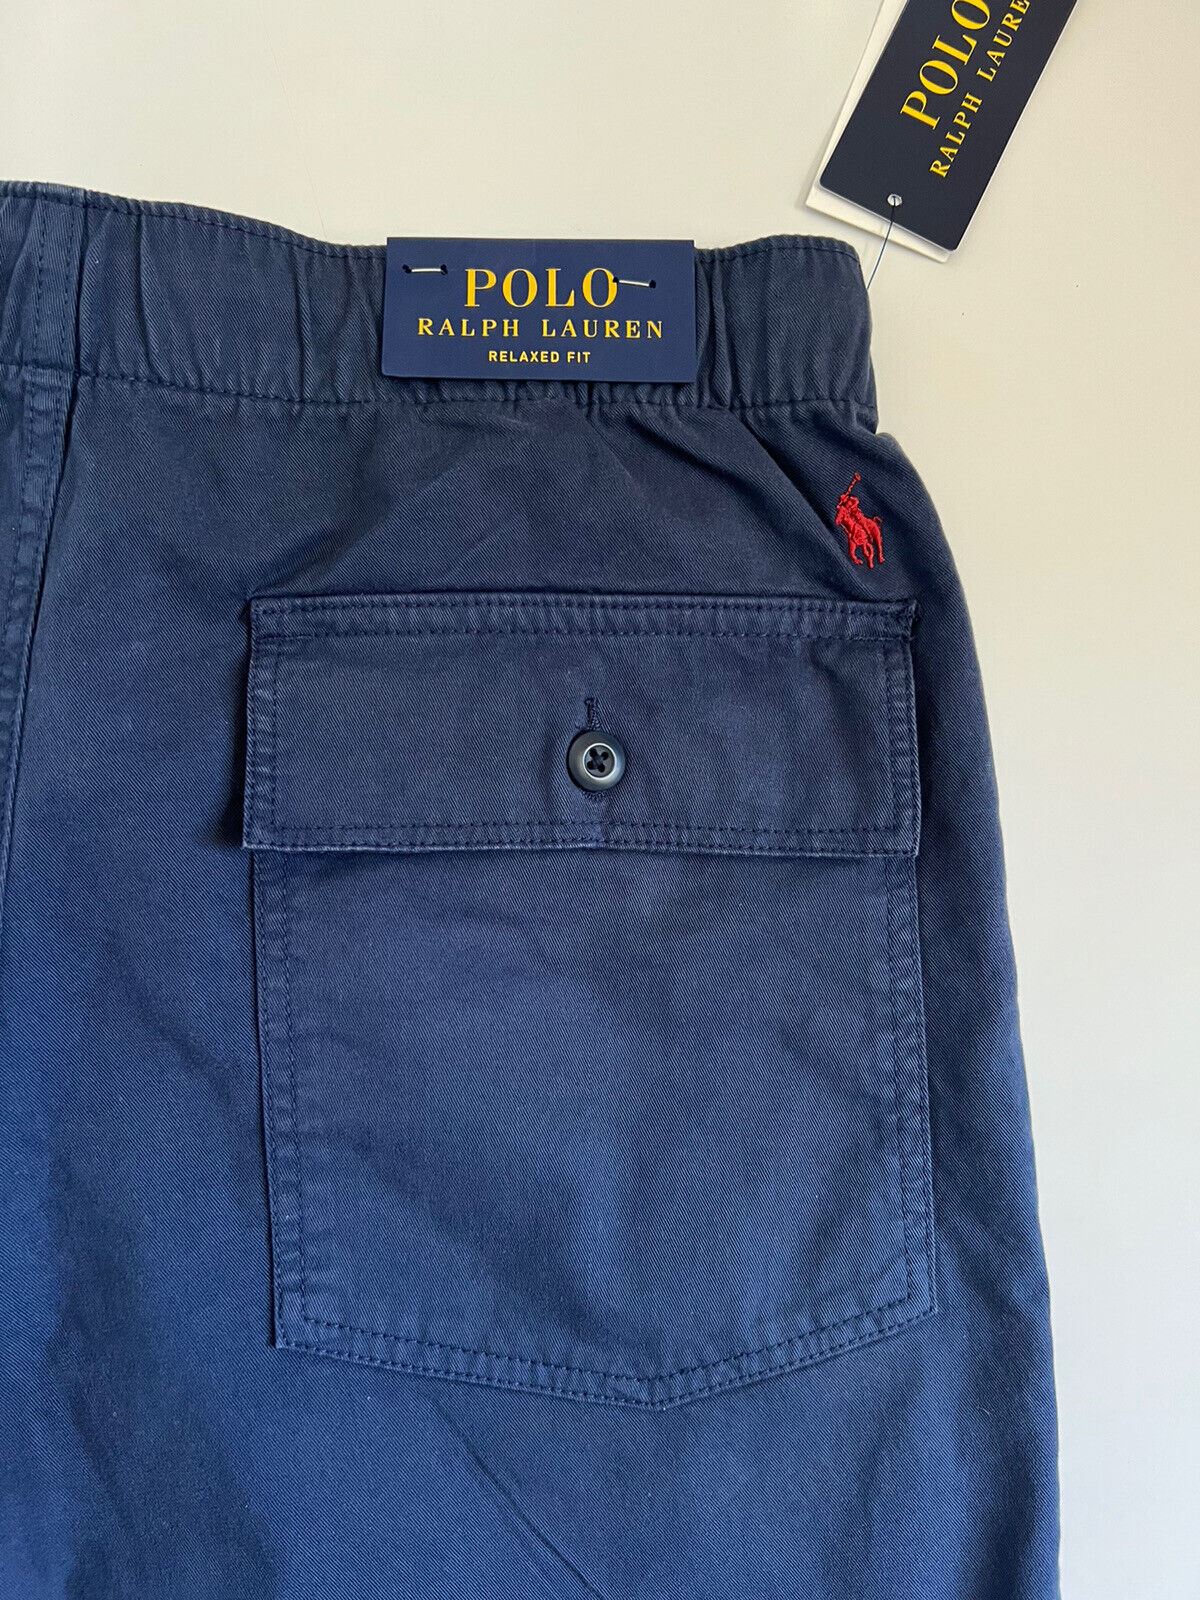 Neu mit Etikett: 125 $ Polo Ralph Lauren Herren-Shorts in Blau, Größe S